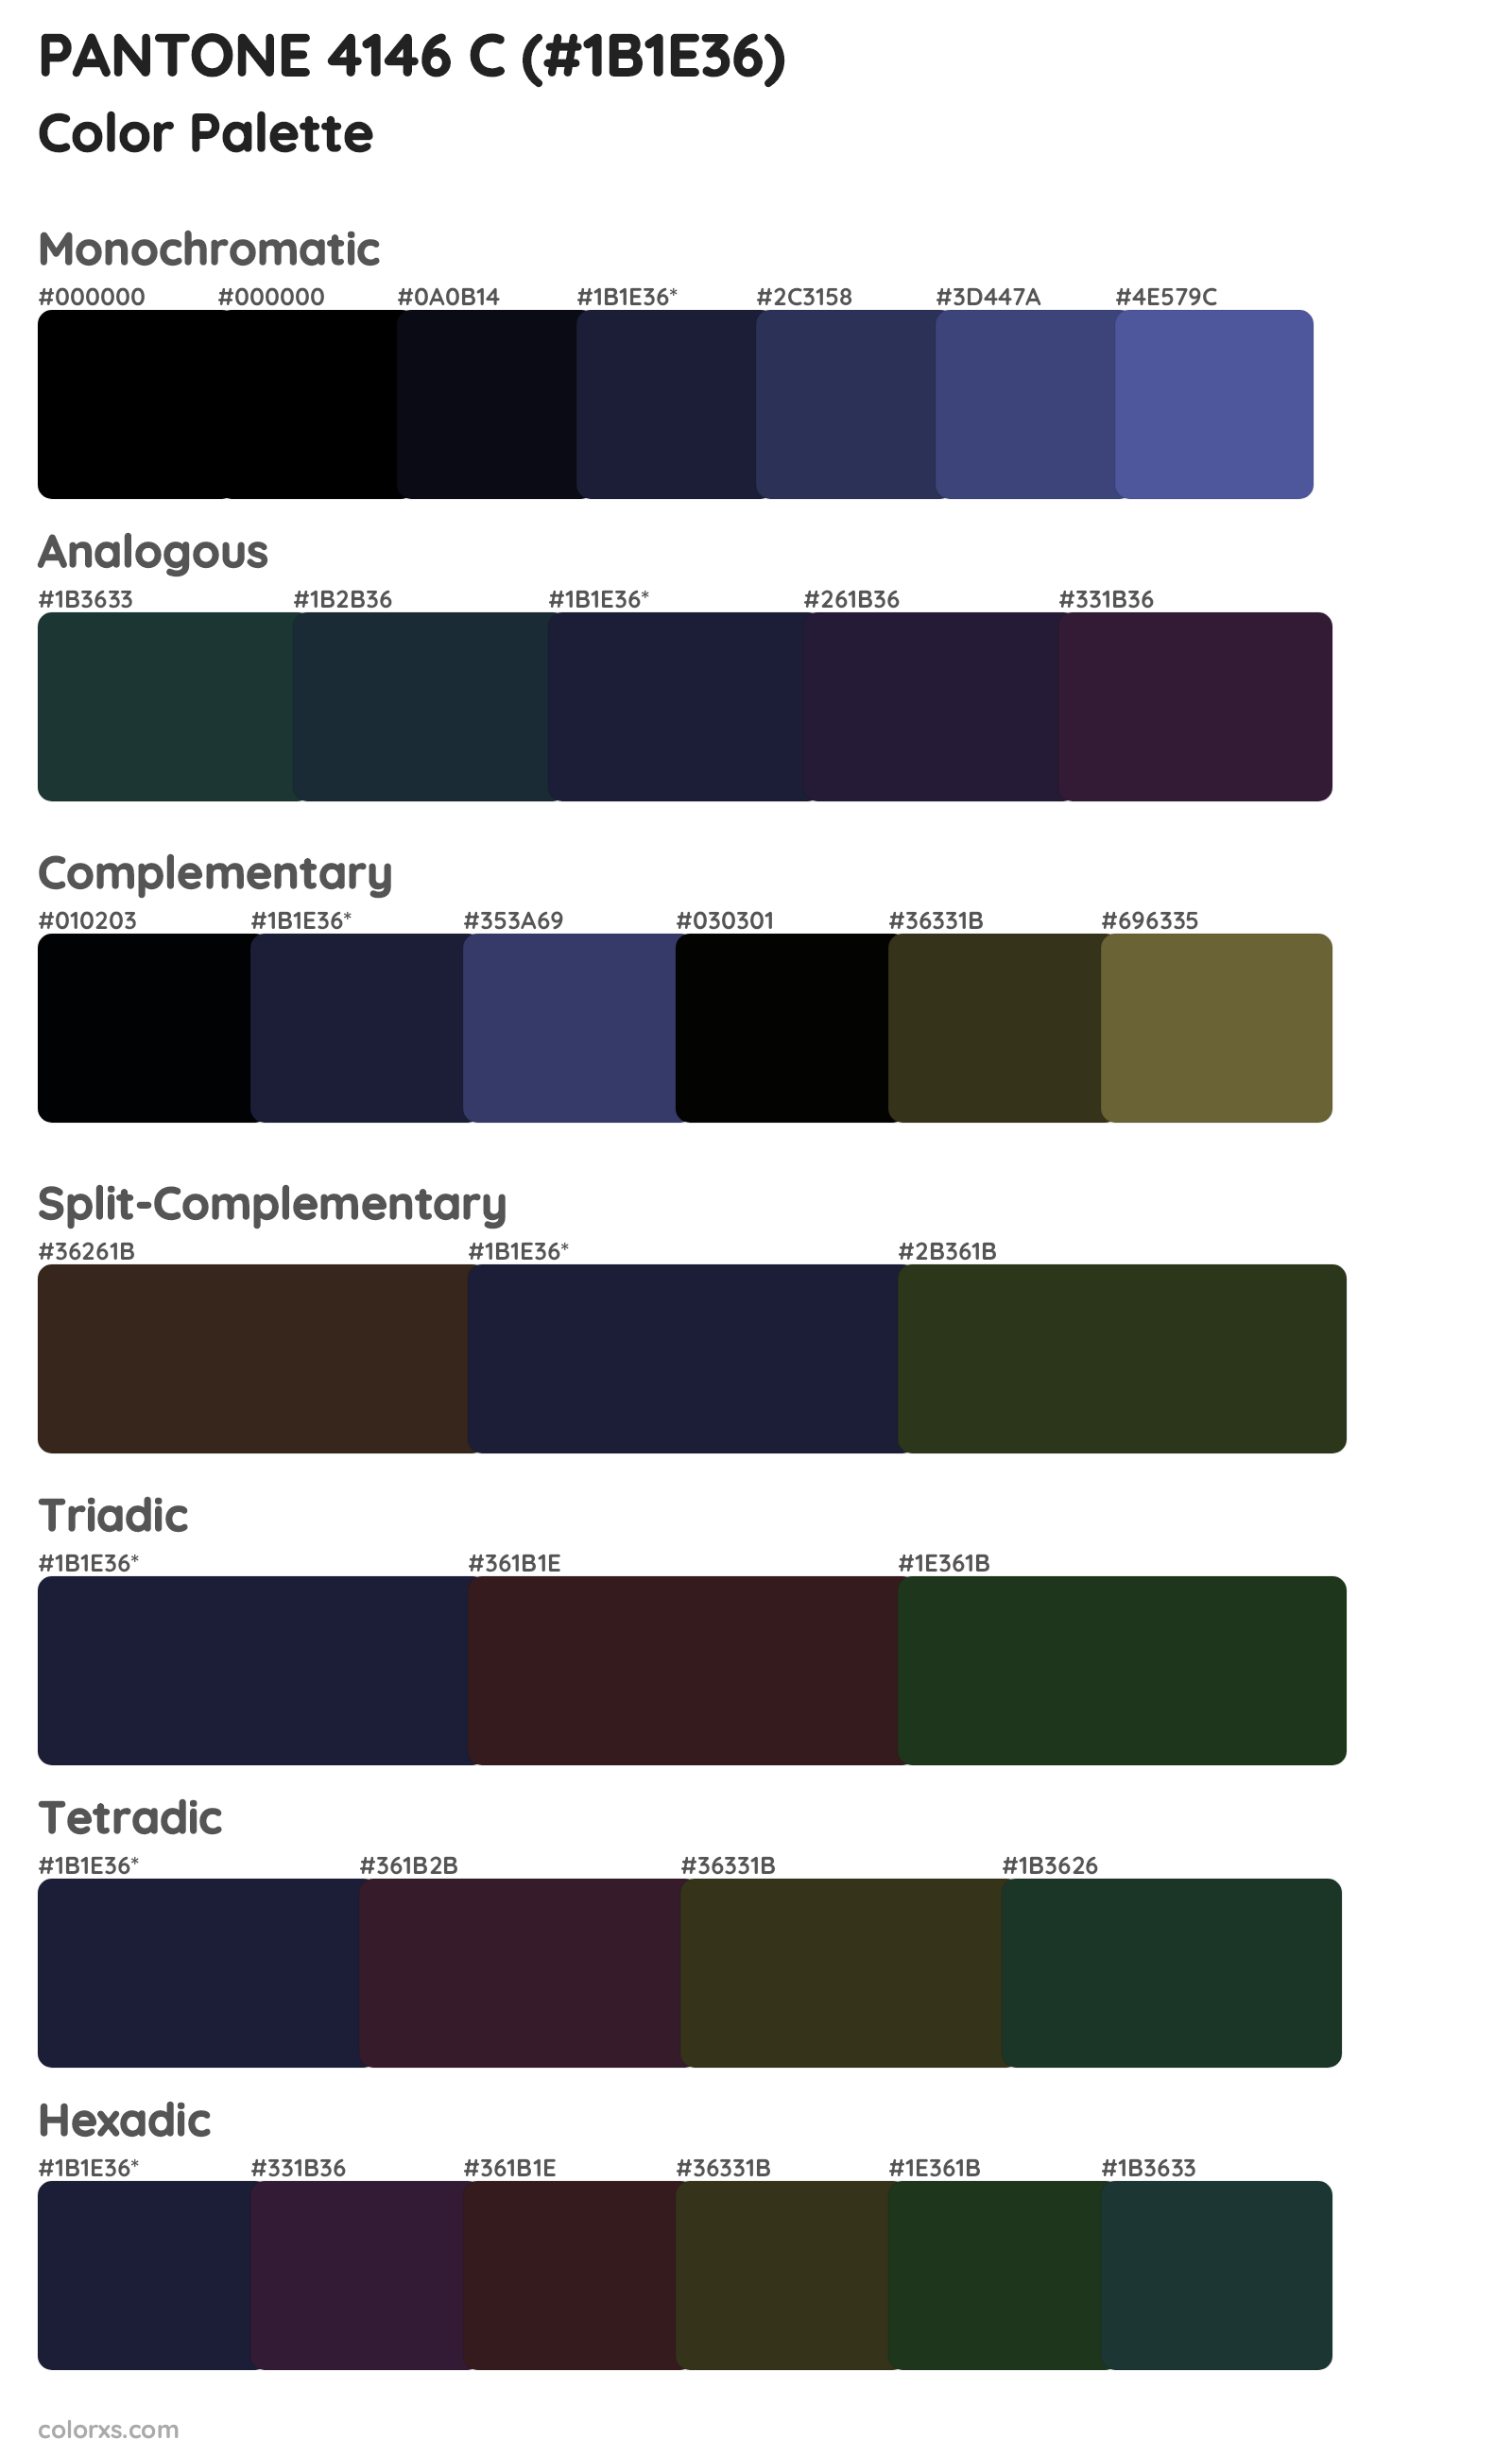 PANTONE 4146 C Color Scheme Palettes